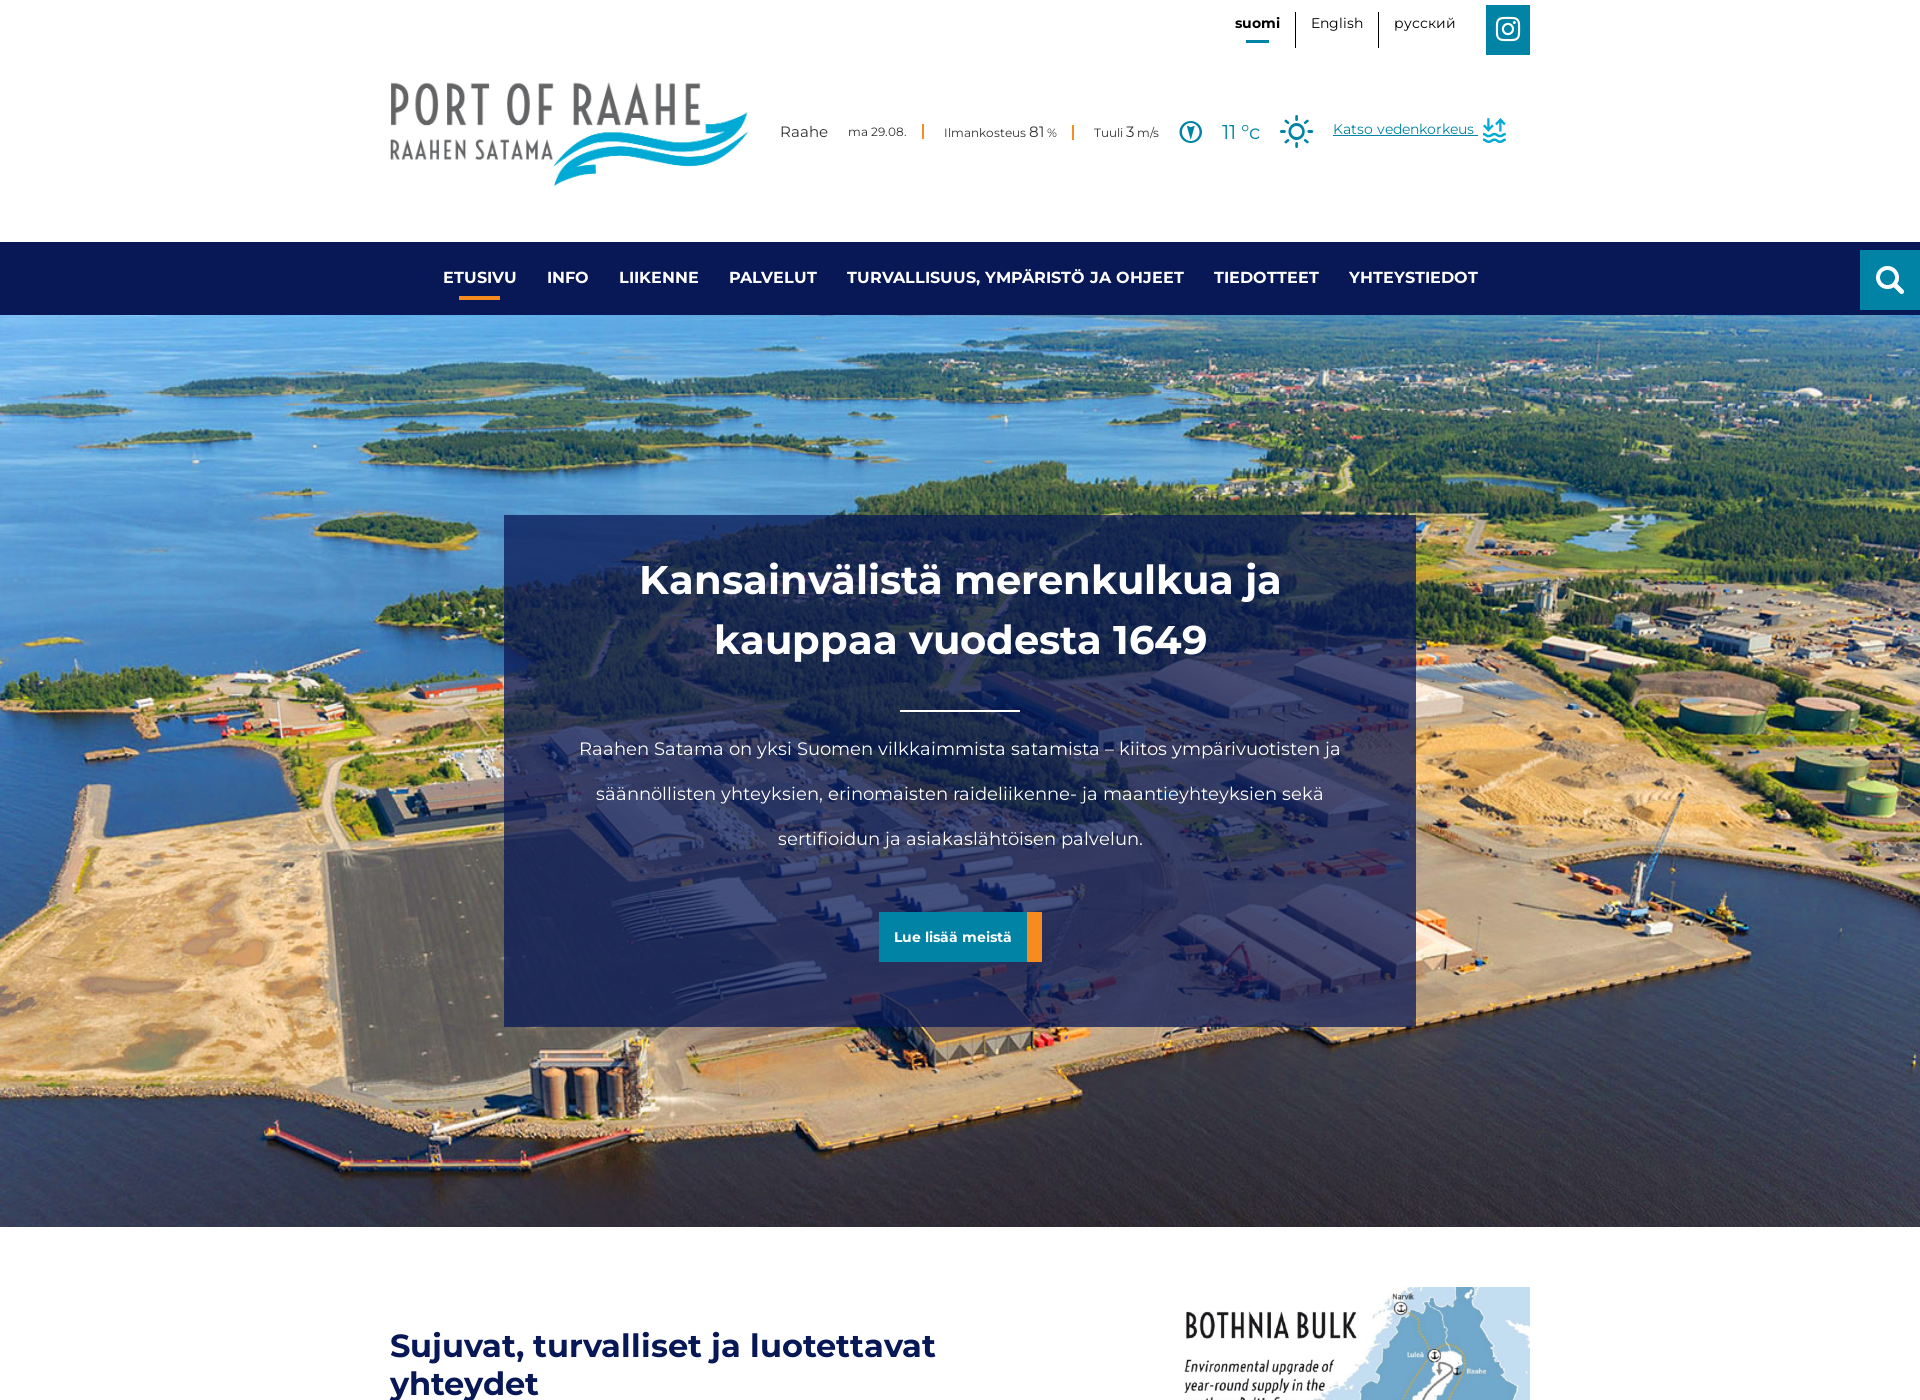 Skärmdump för portofraahe.fi